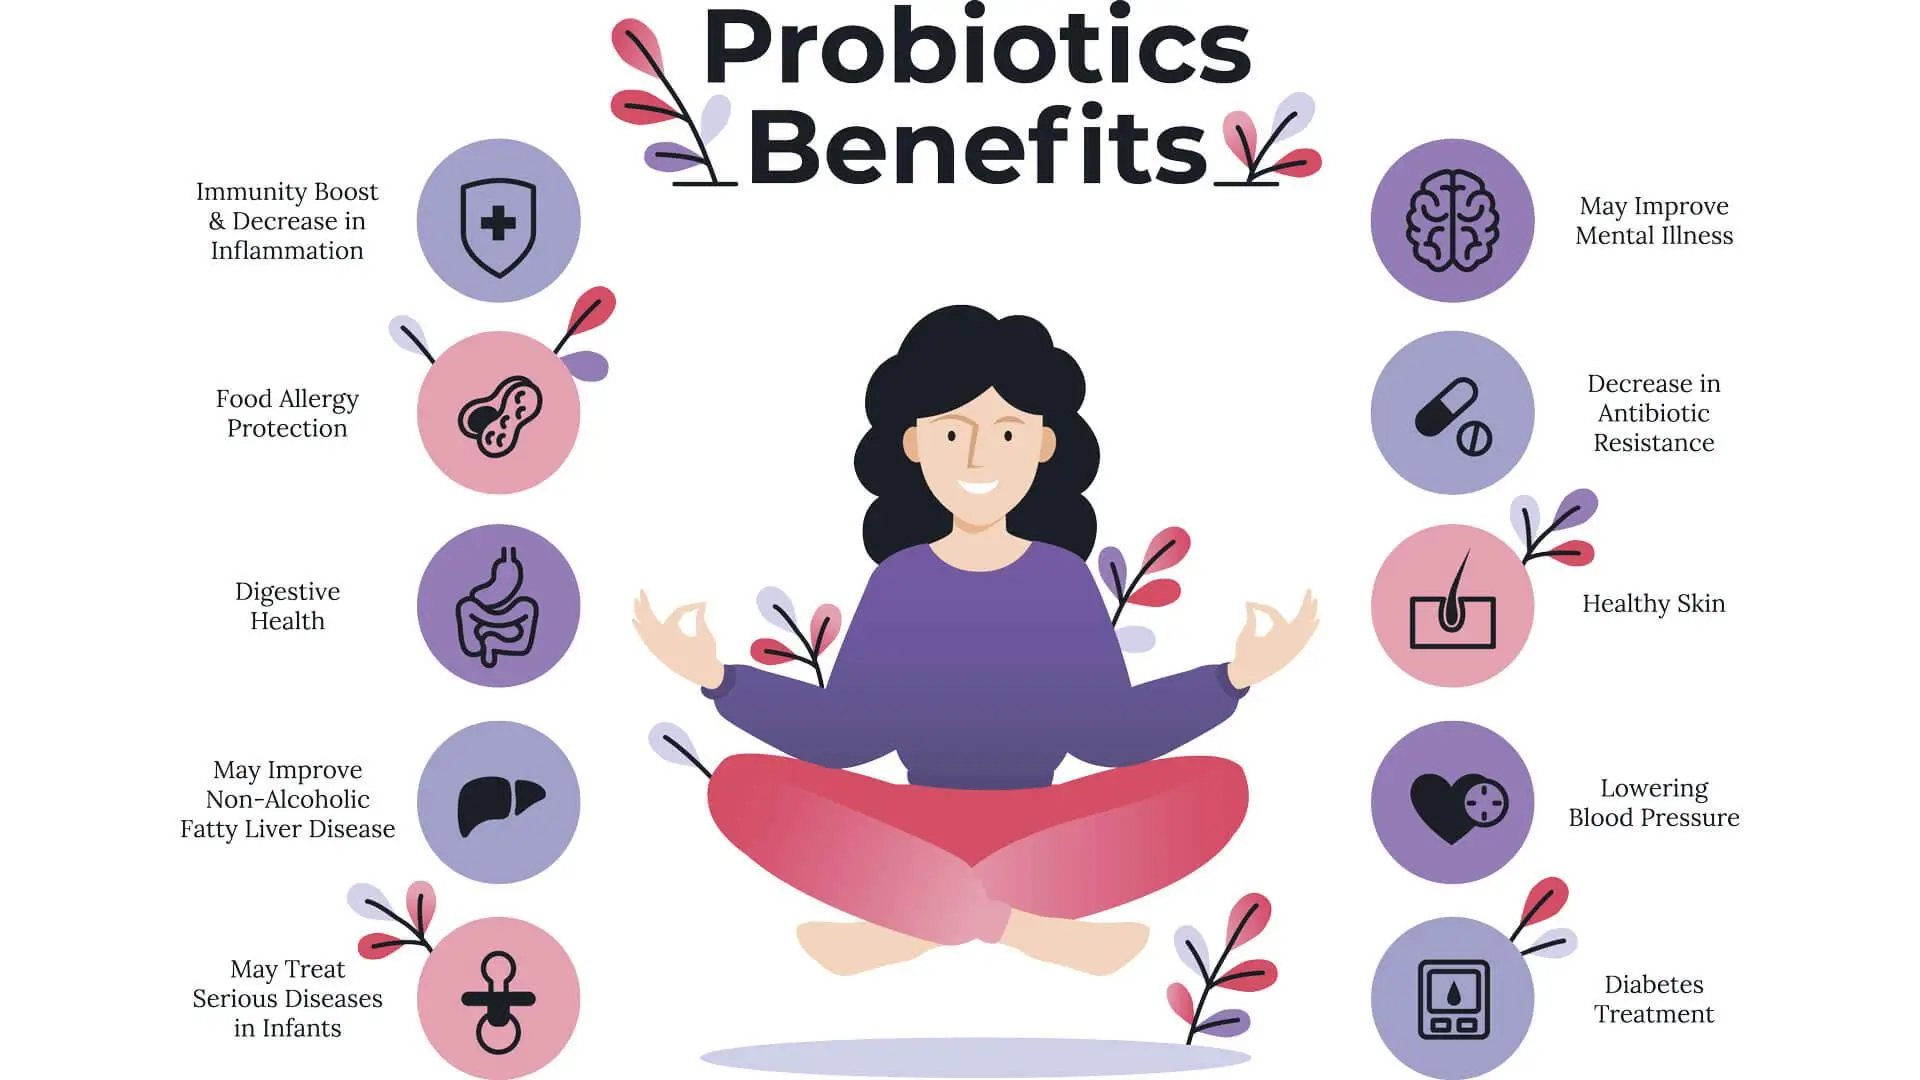 Probiotic health benefits